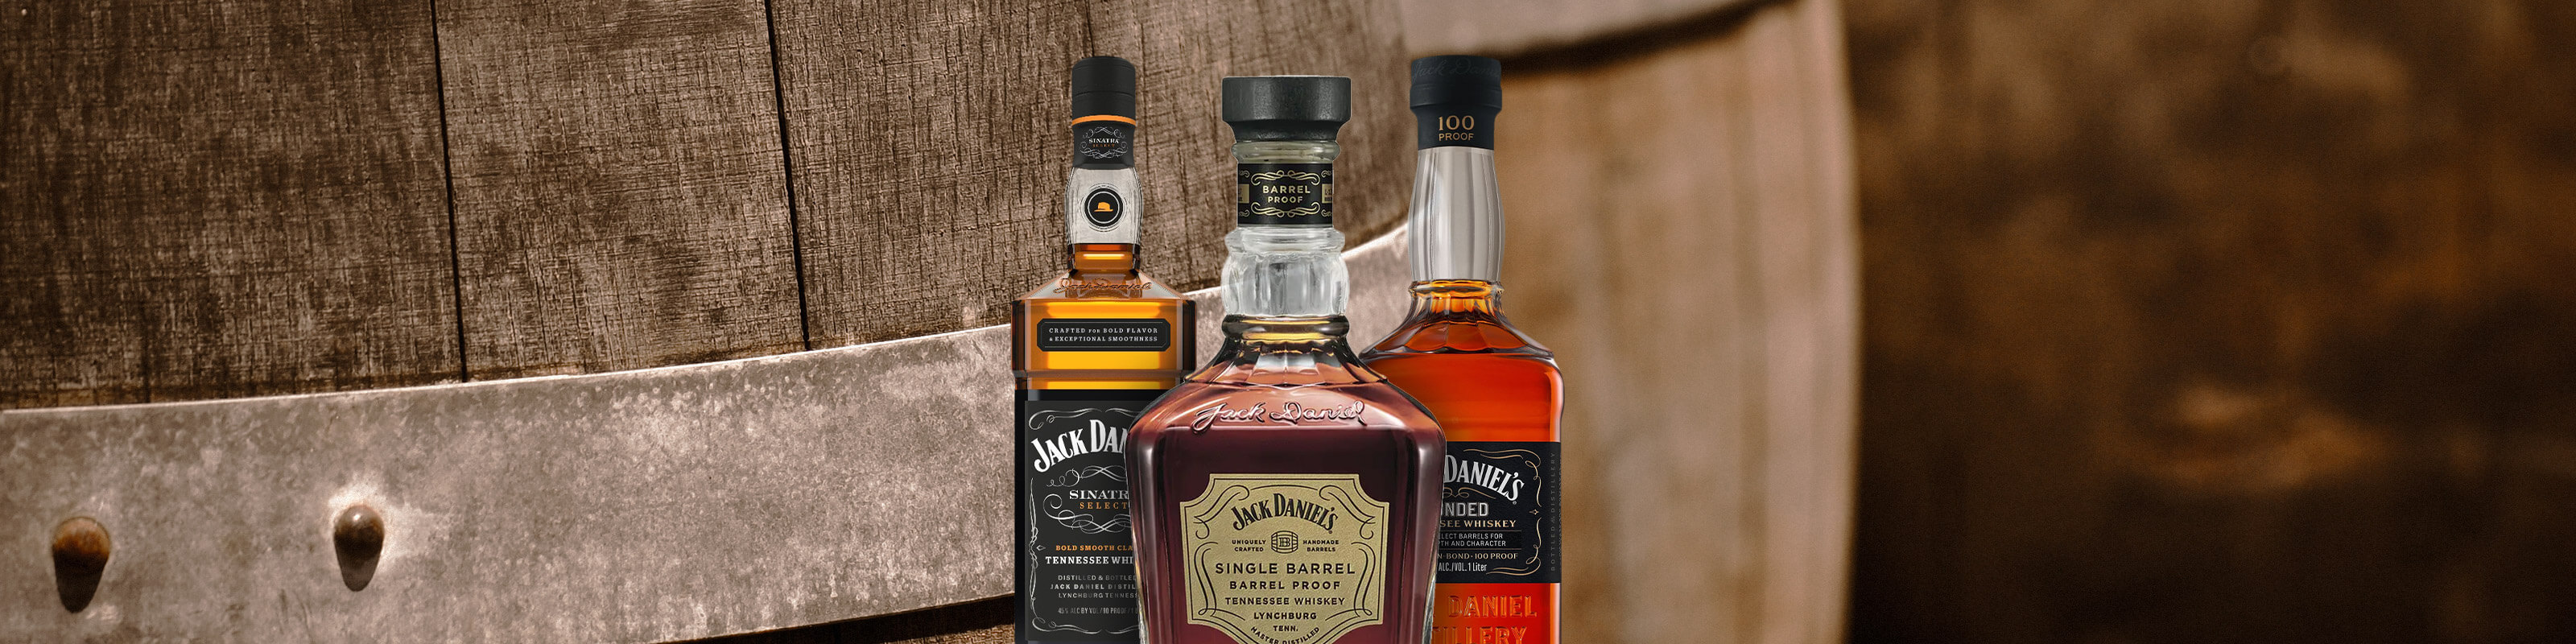 Jack Daniel's Bonded Tennessee Whiskey 1 Liter